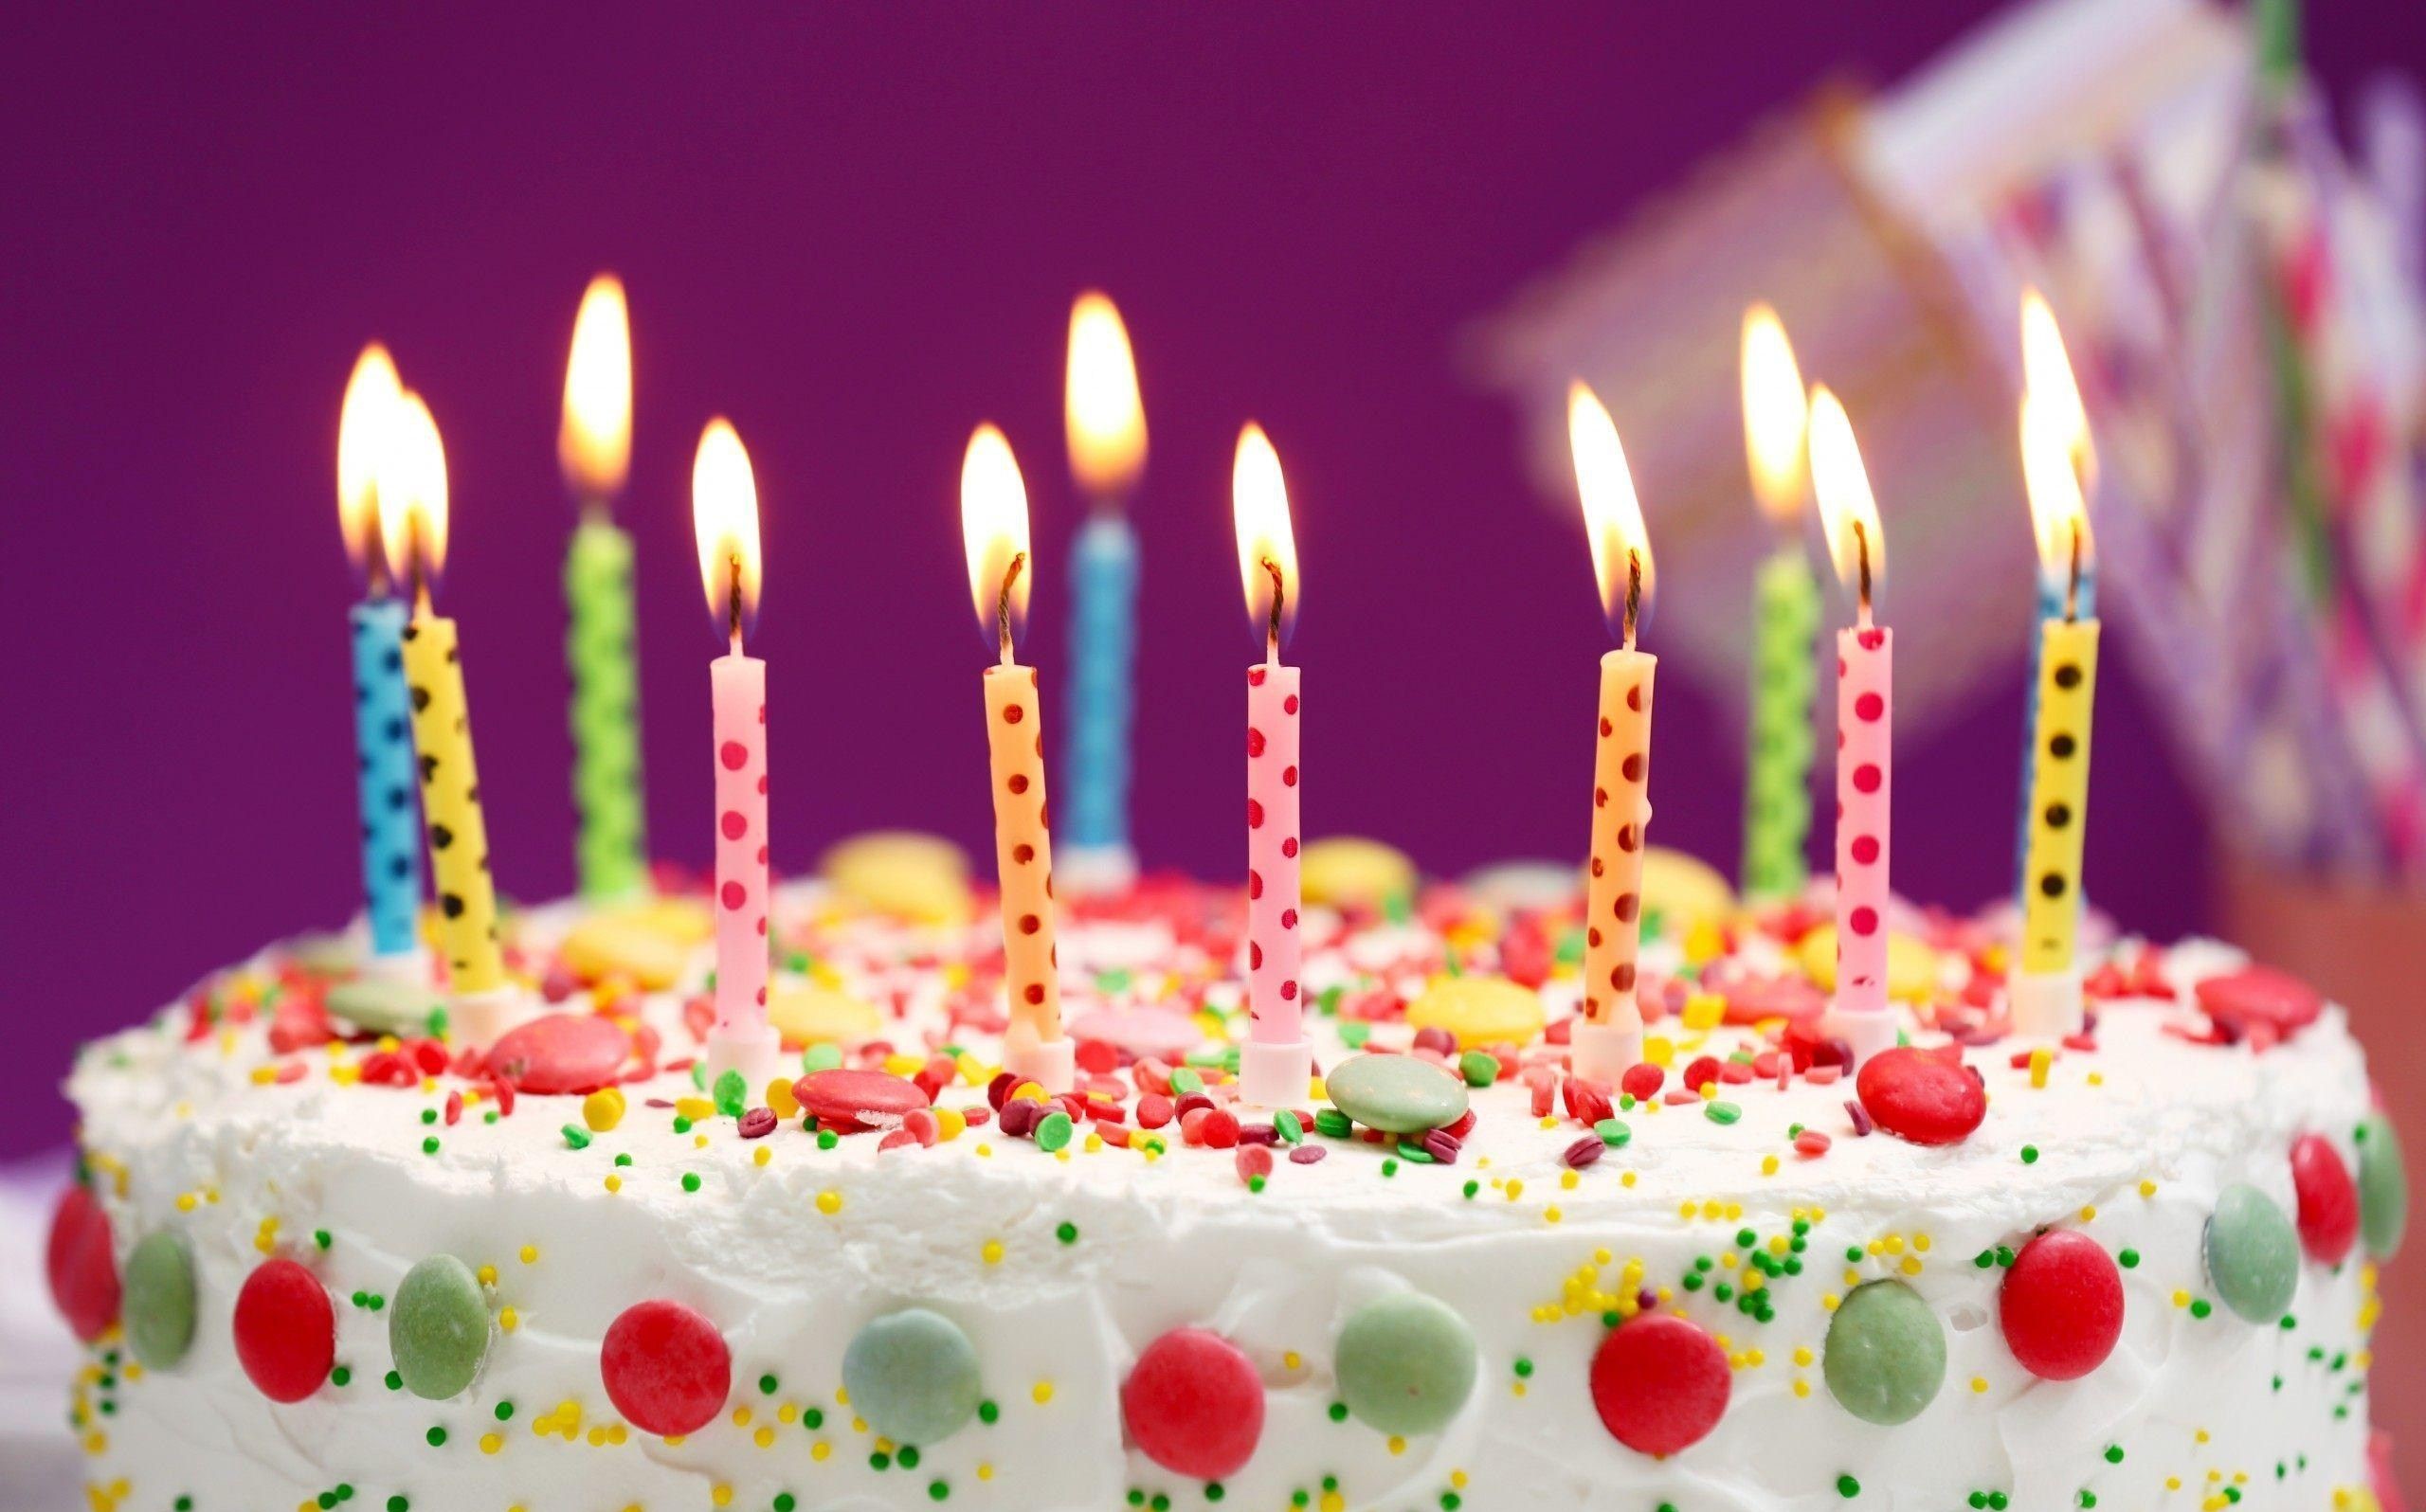 عکس کیک جشن تولد رنگارنگ و شاد مناسب چاپ کارت پستال